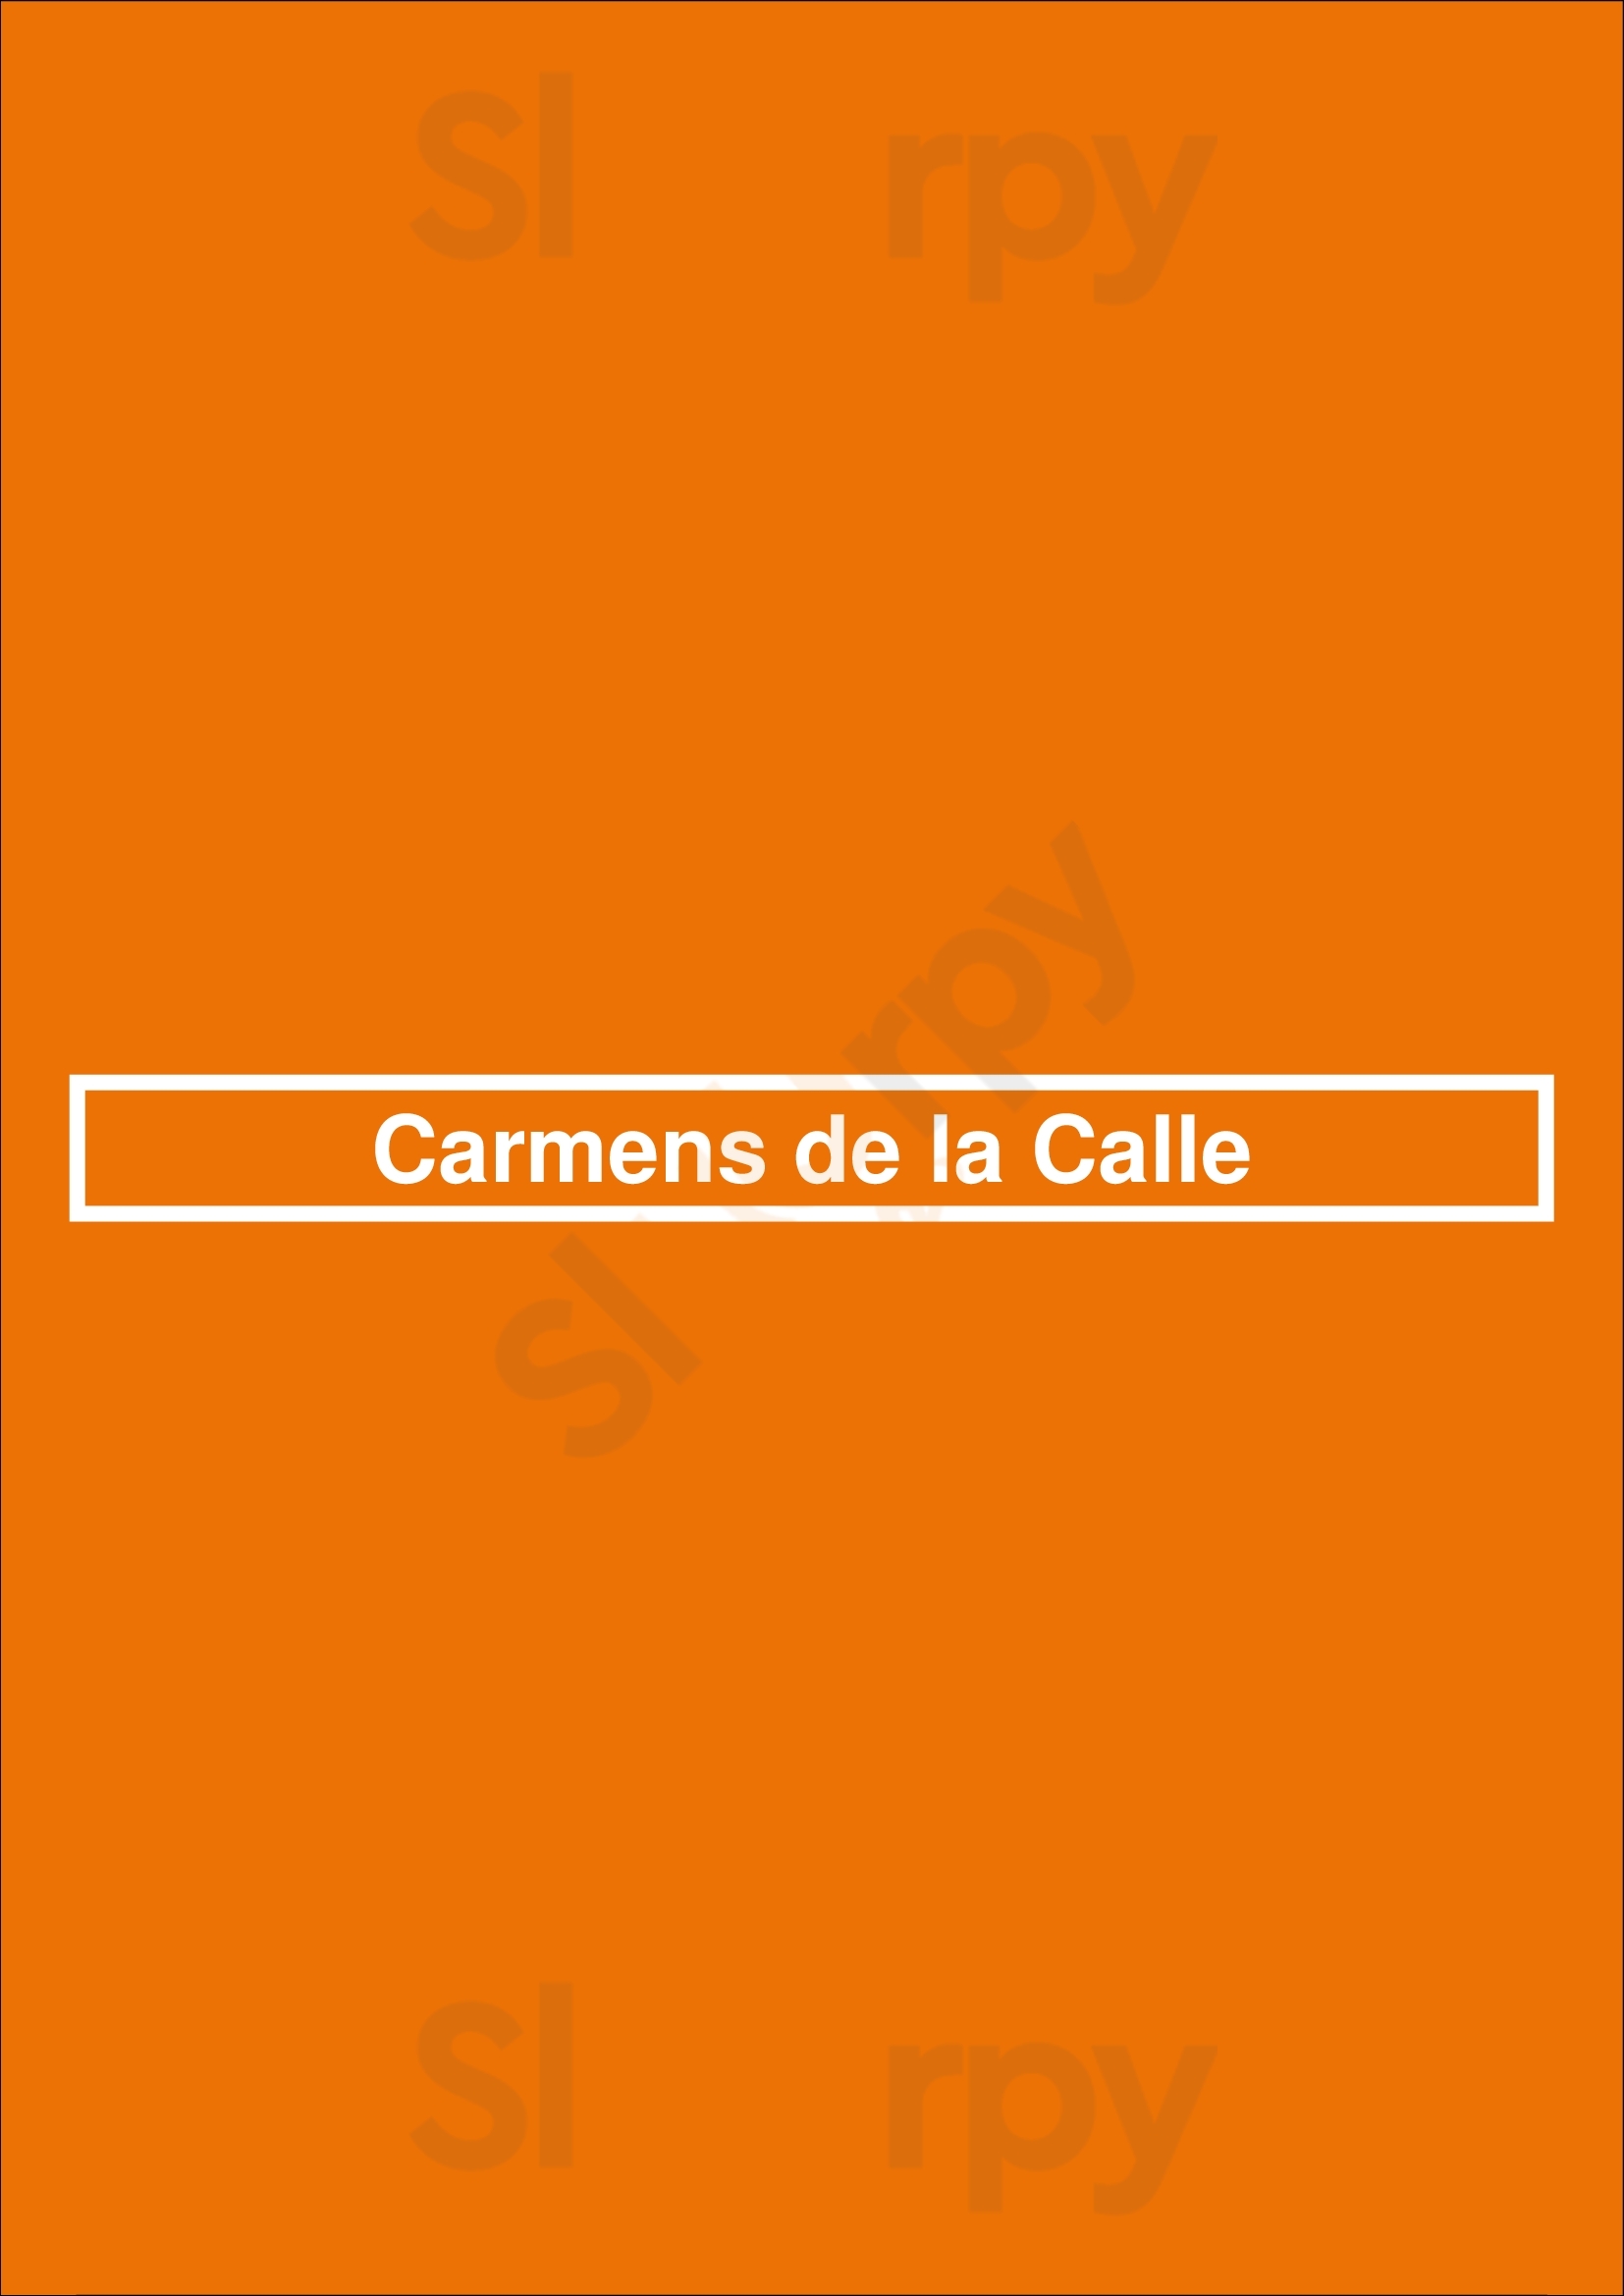 Carmens De La Calle San Antonio Menu - 1